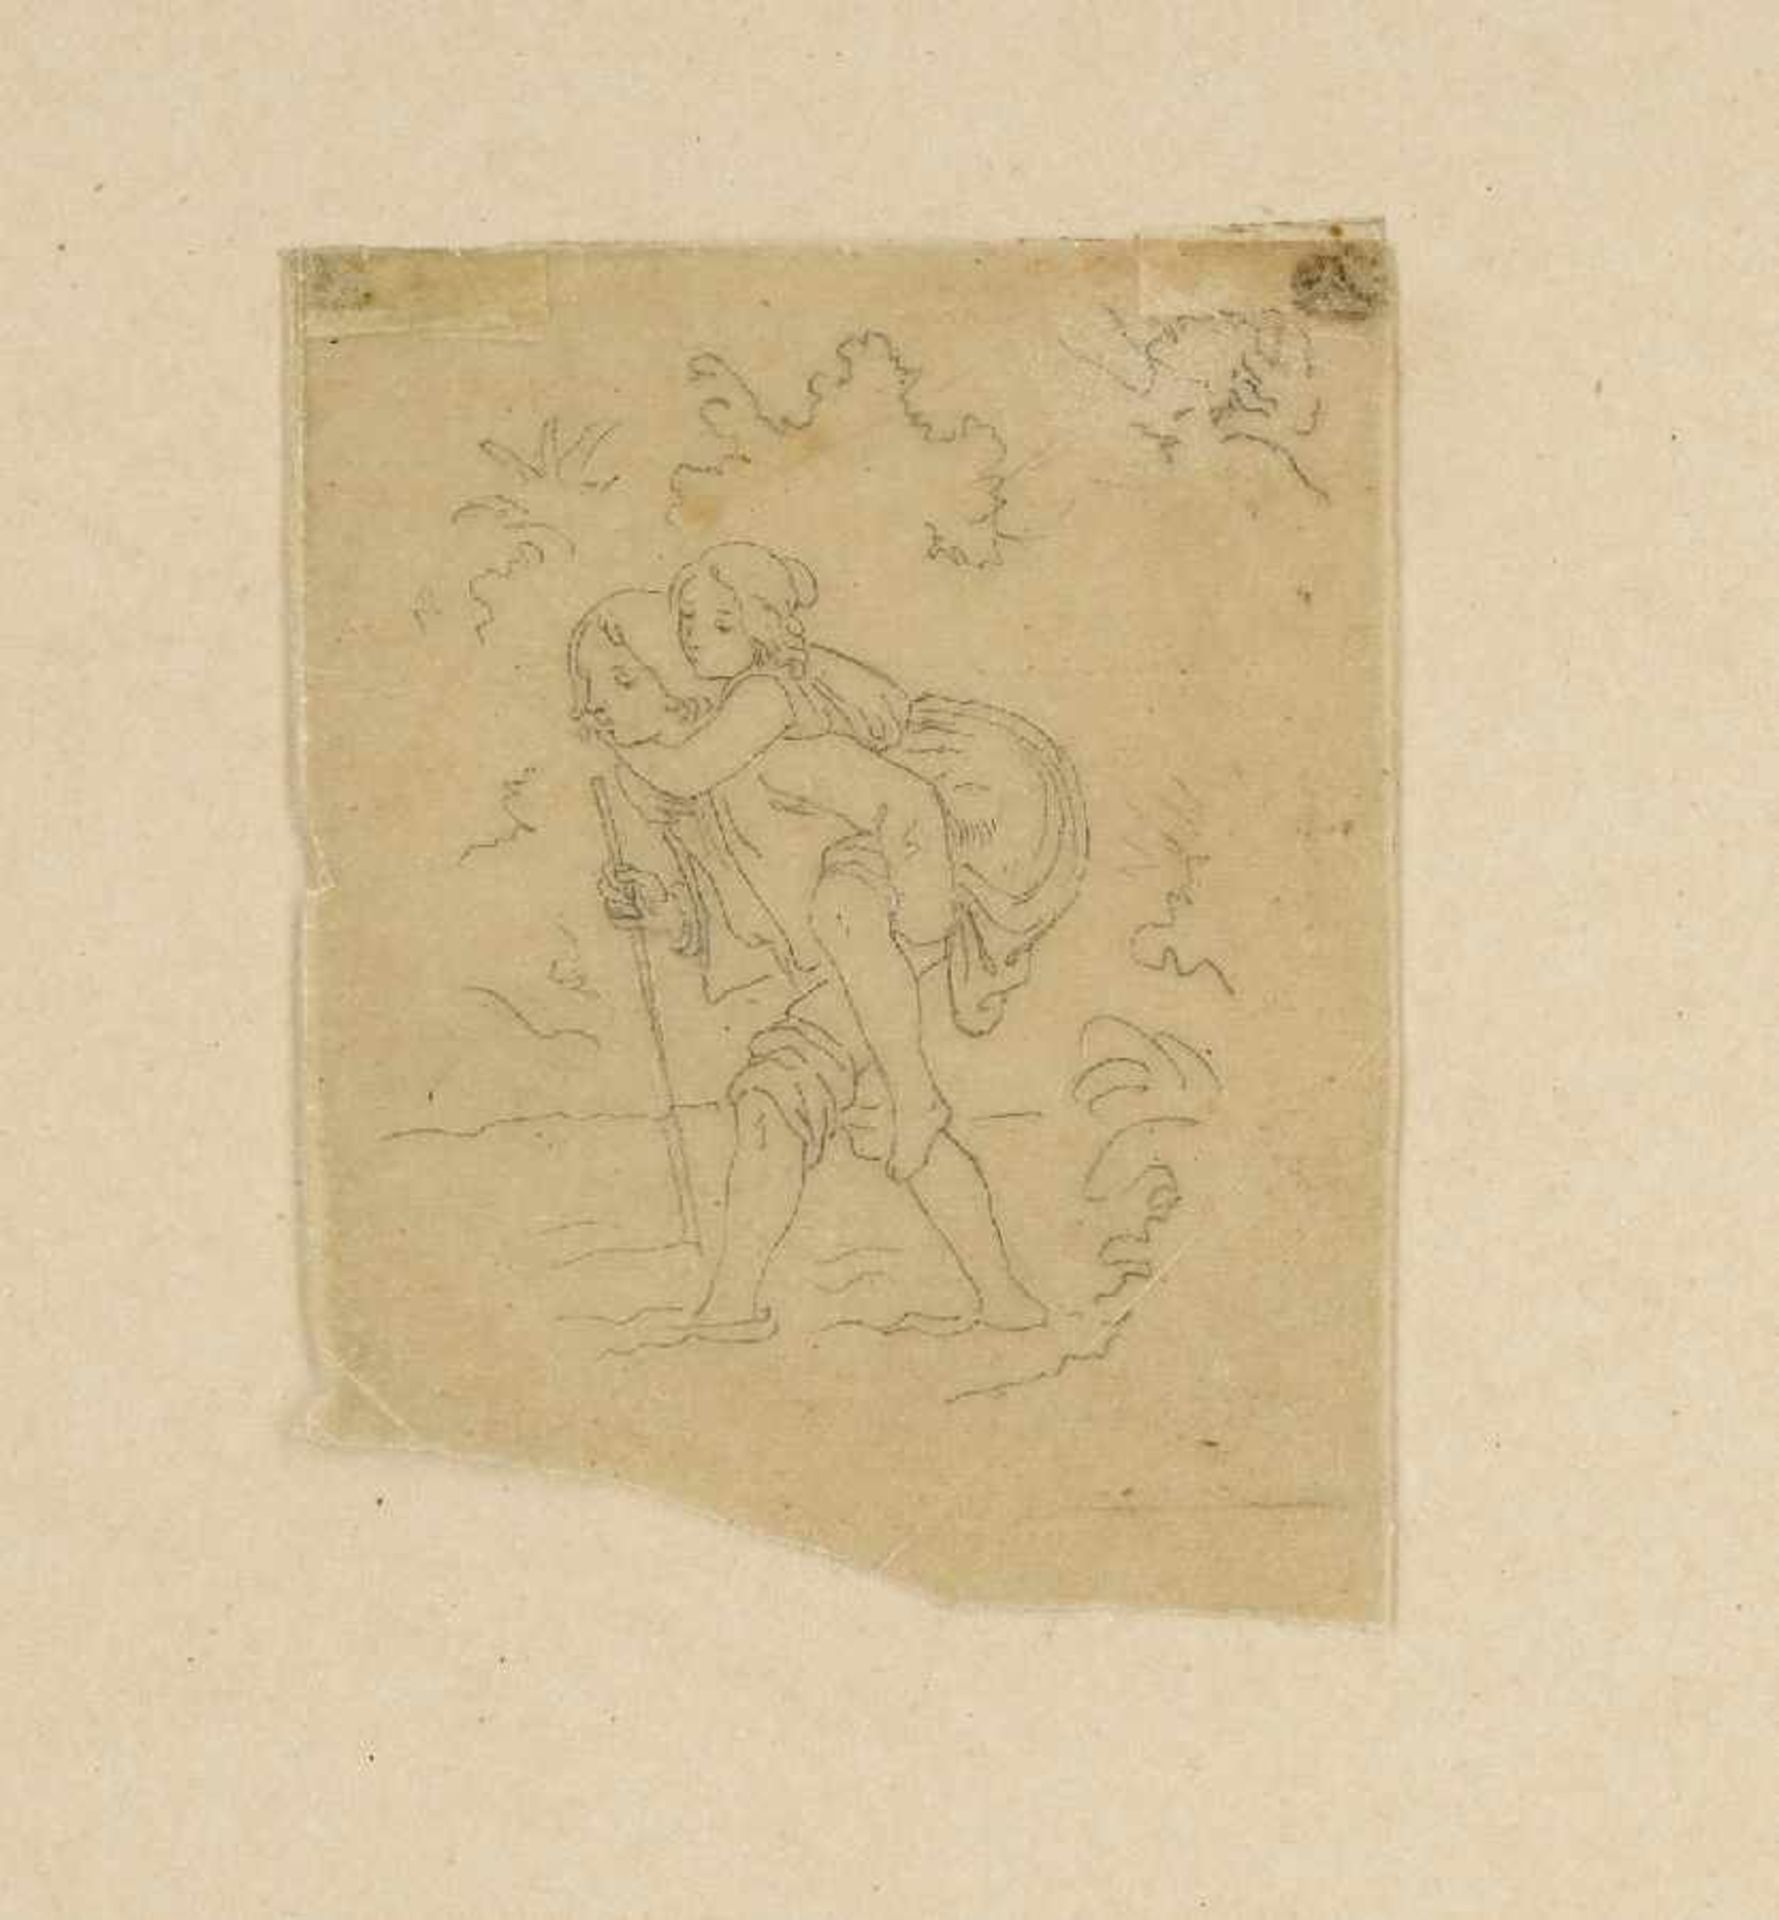 Ludwig Adrian Richter1803 Dresden - 1884 ebendaPaul und VirginieBleistift auf Transparentpapier; H